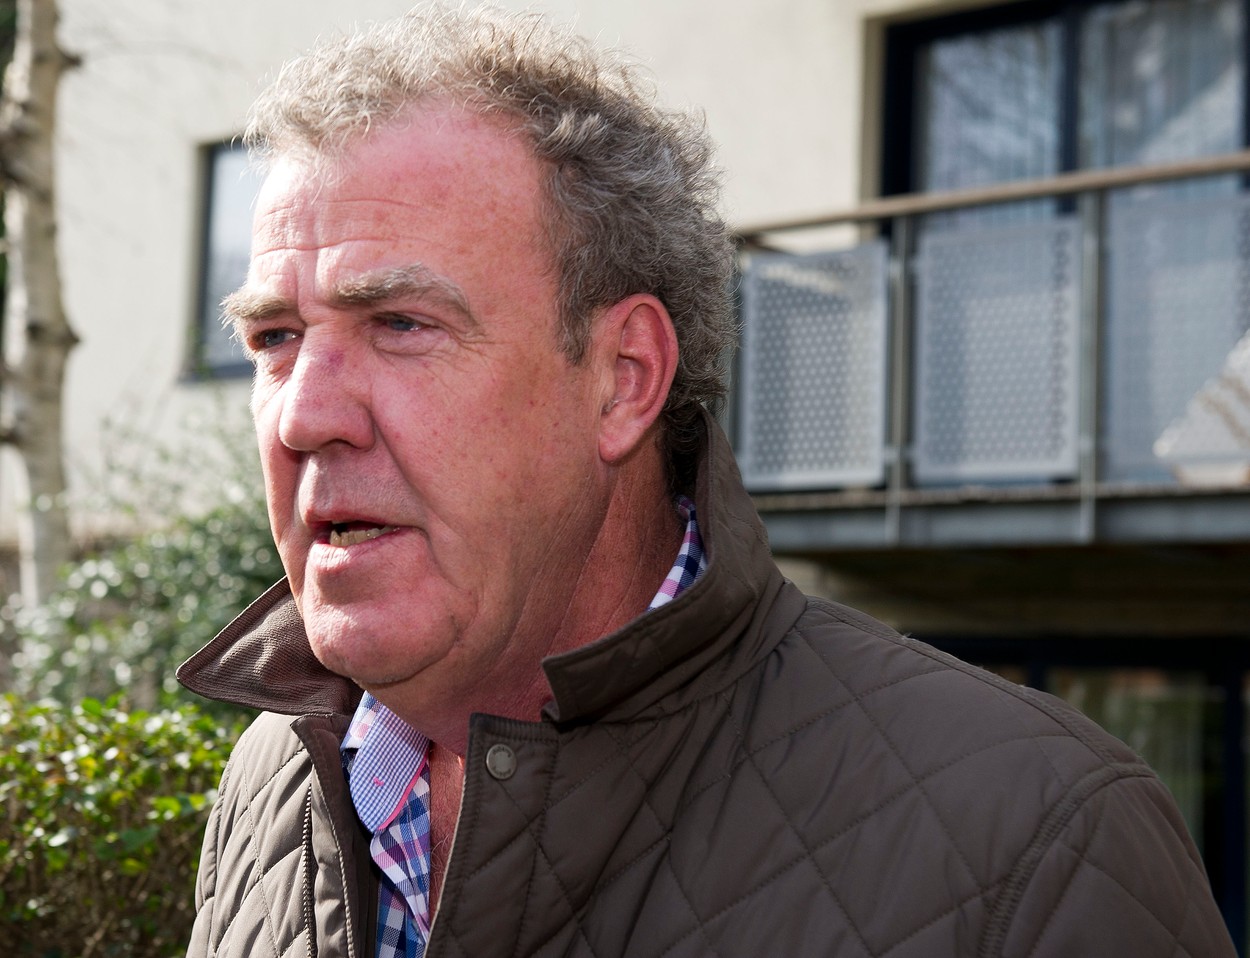 Vraťte Clarksona do Top Gear! Petici podepsalo 700 tisíc lidí